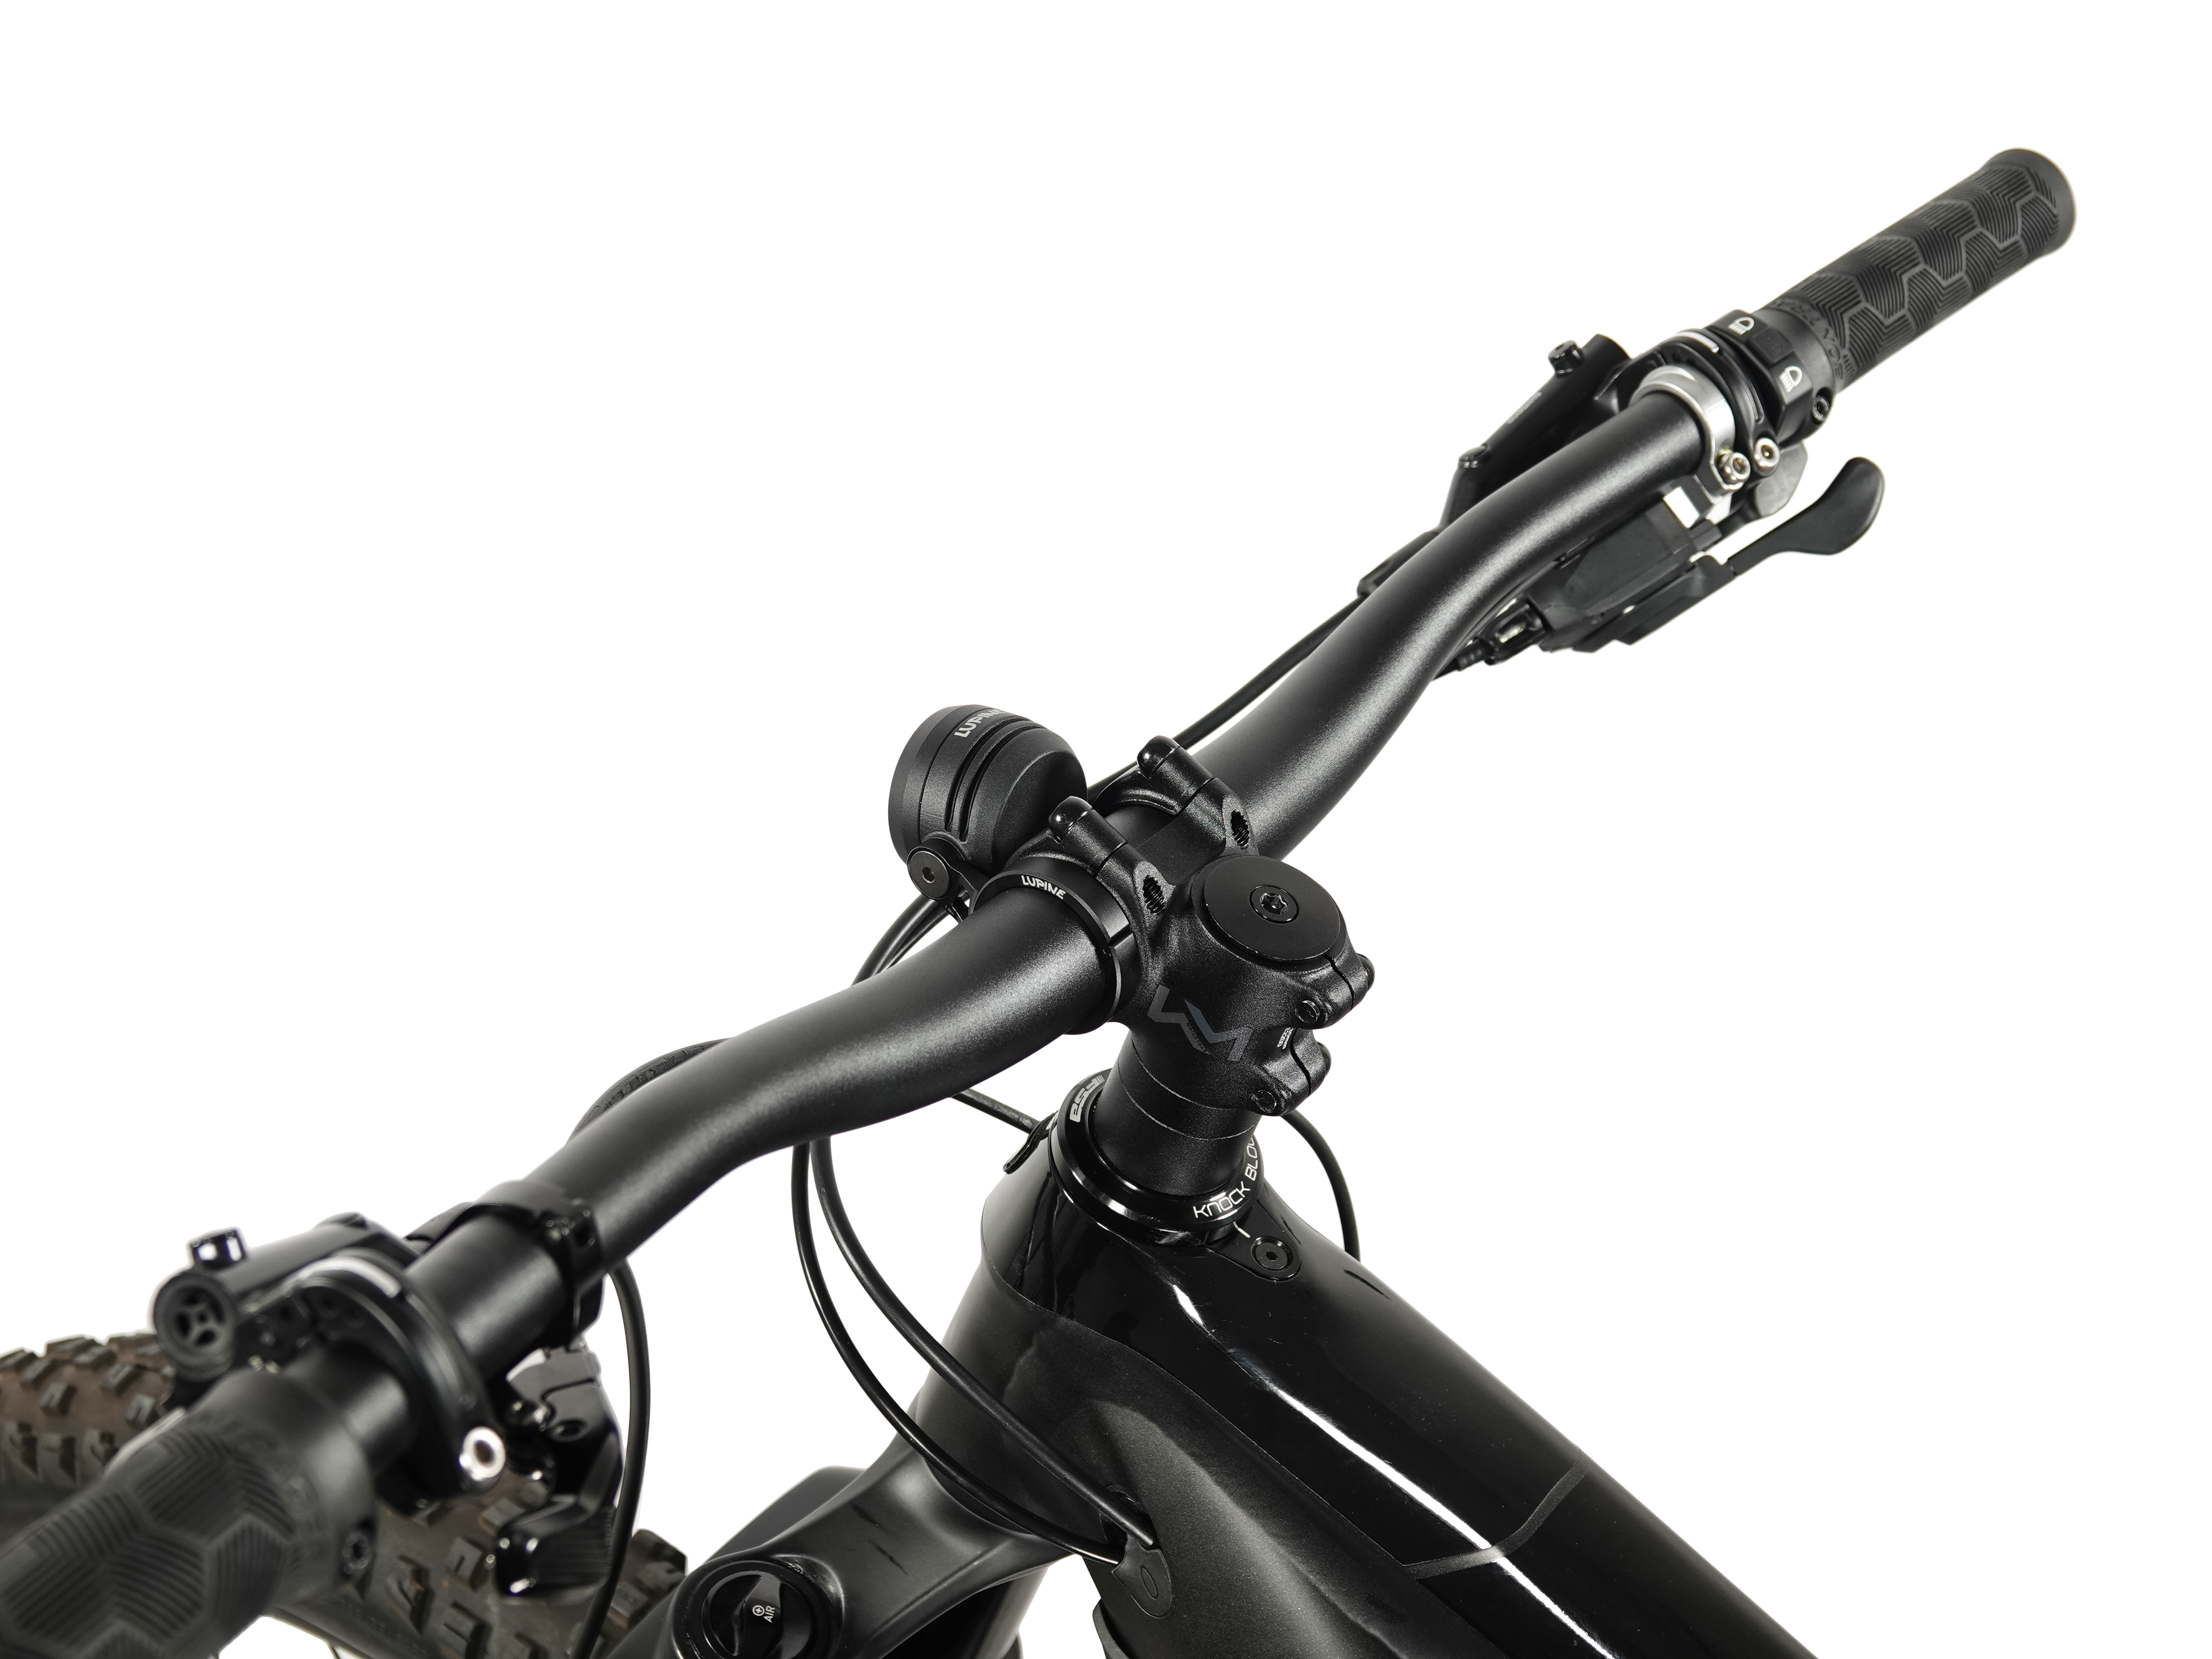 Lupine SL AF 4 LED Frontlicht mit StVZO-Zulassung - bike-components